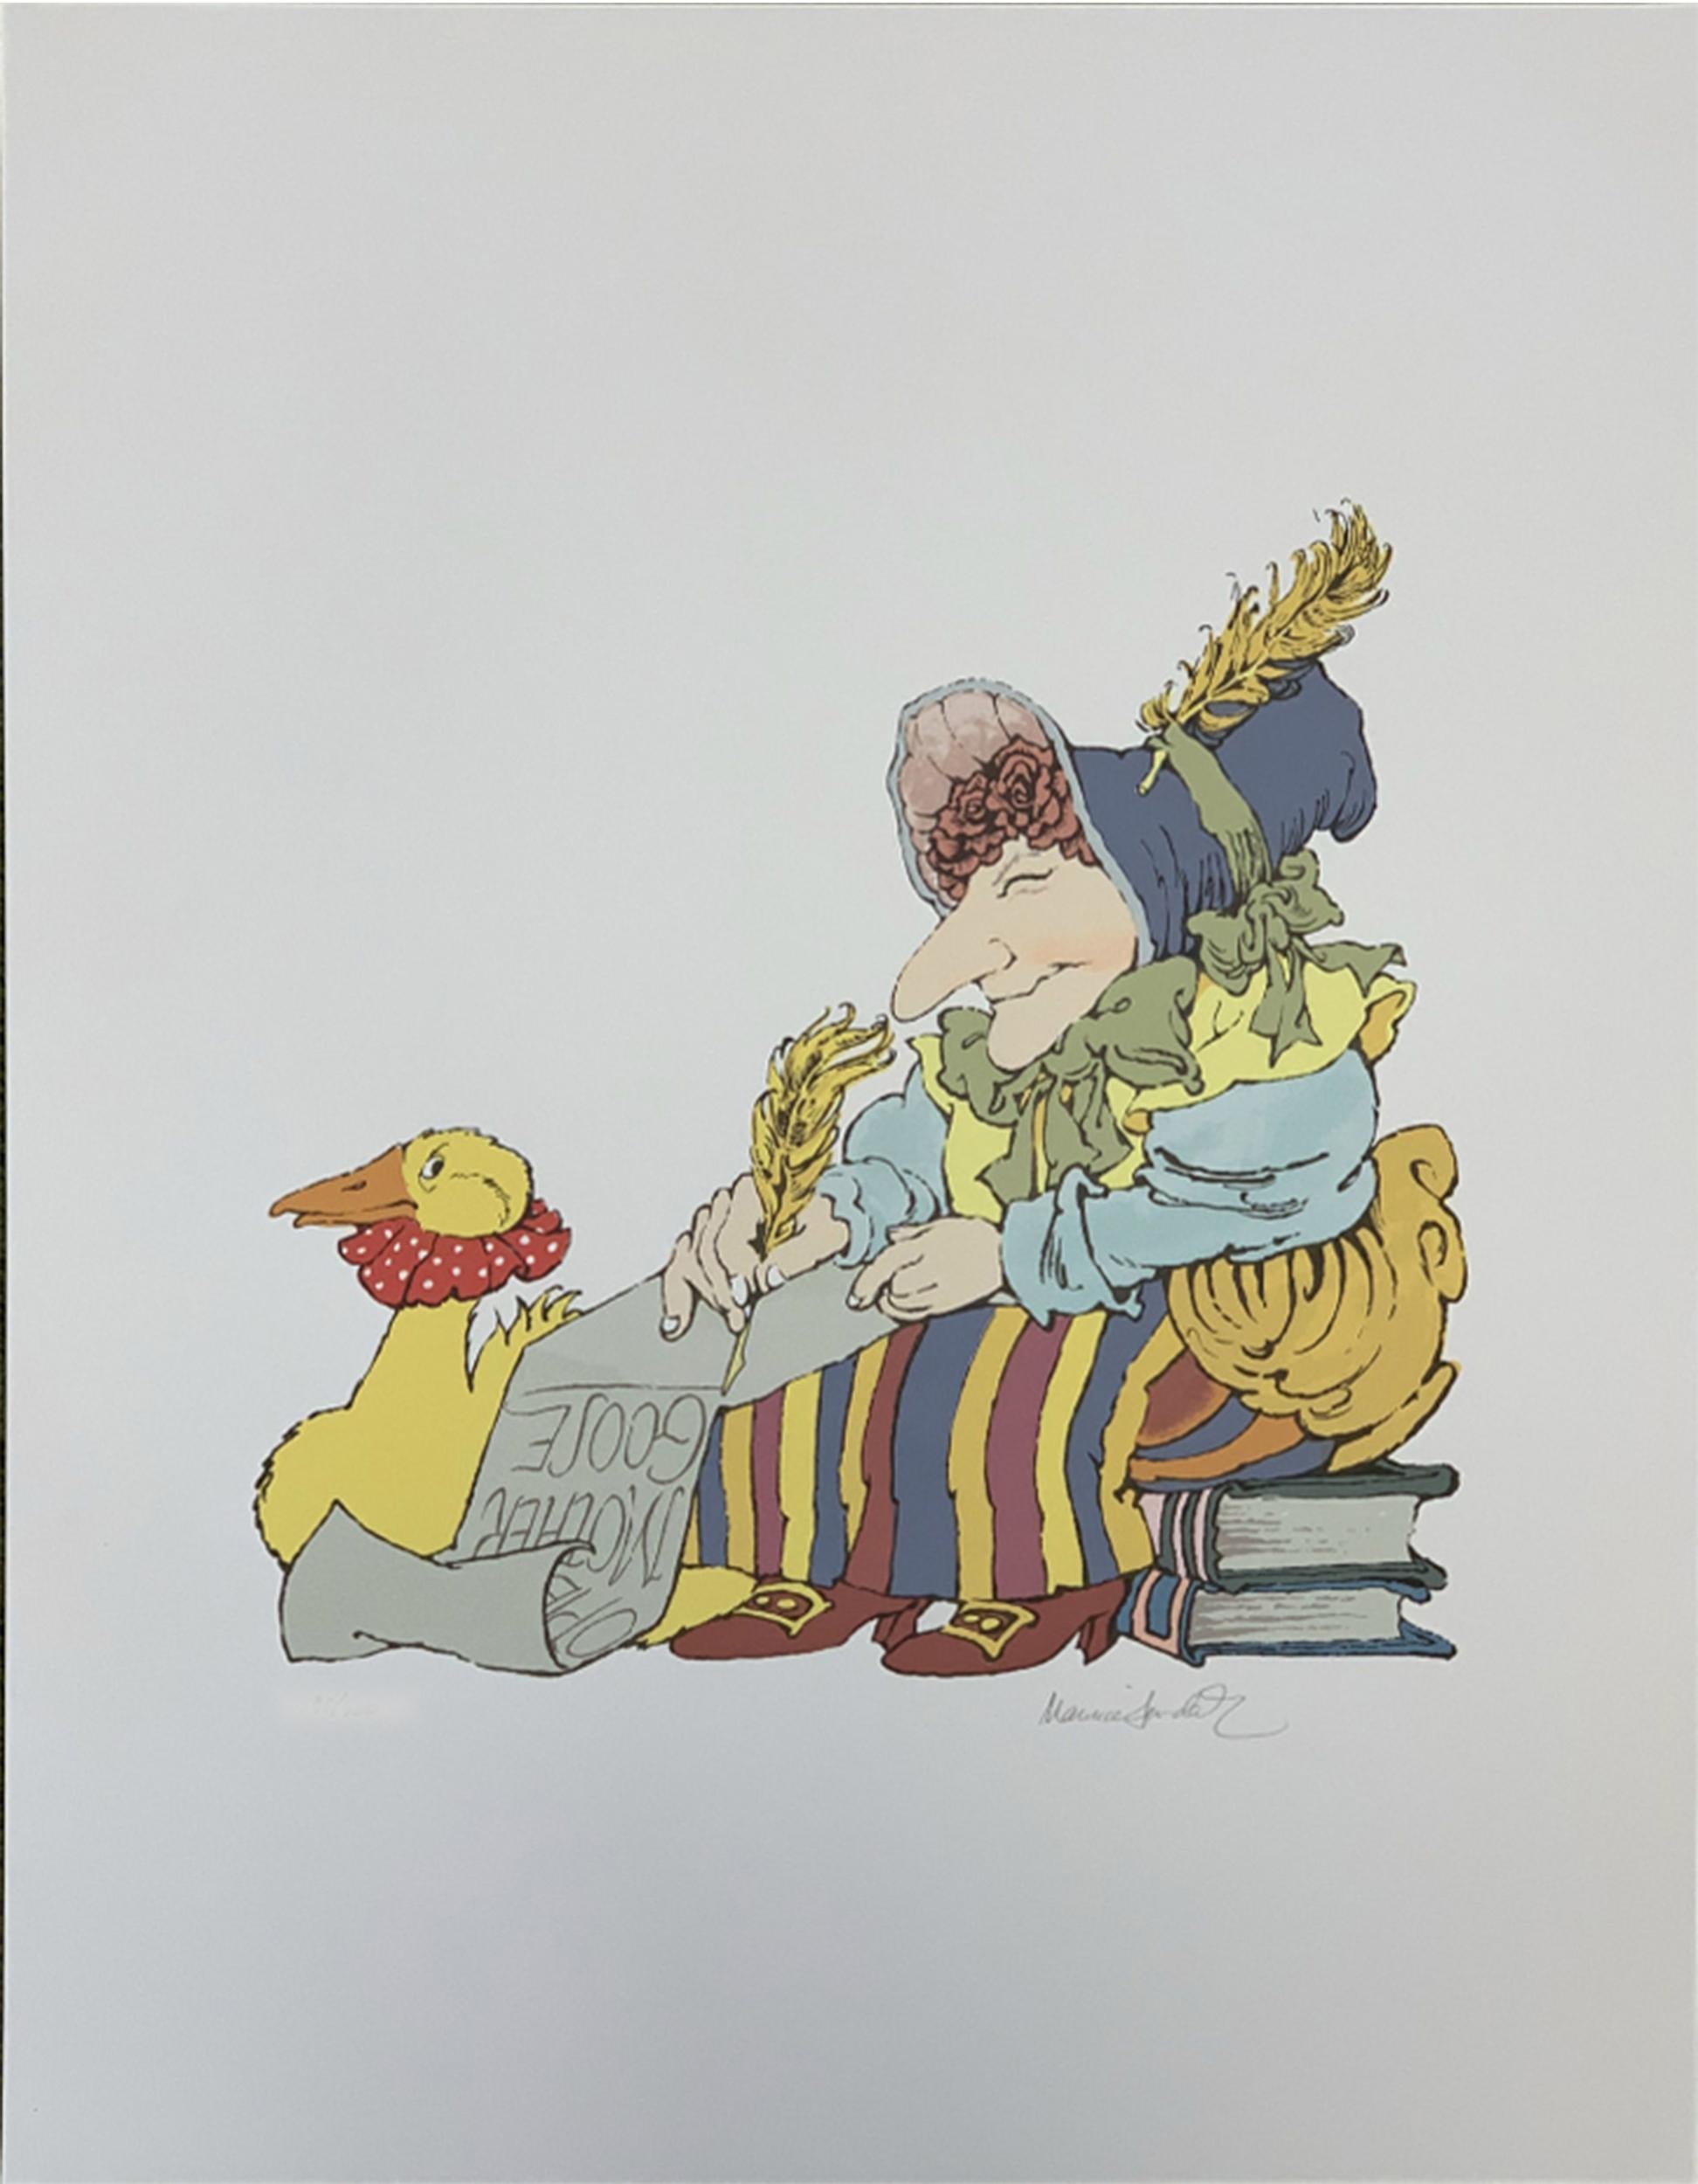 Ein traditioneller Druck im Stil einer Kinderillustration von Mutter Gans, die auf einem Stapel Bücher sitzt und Geschichten auf eine Schriftrolle schreibt. Sie ist kunstvoll gekleidet in eine gestreifte Hose, ein gelbes Hemd und eine blaue Haube,